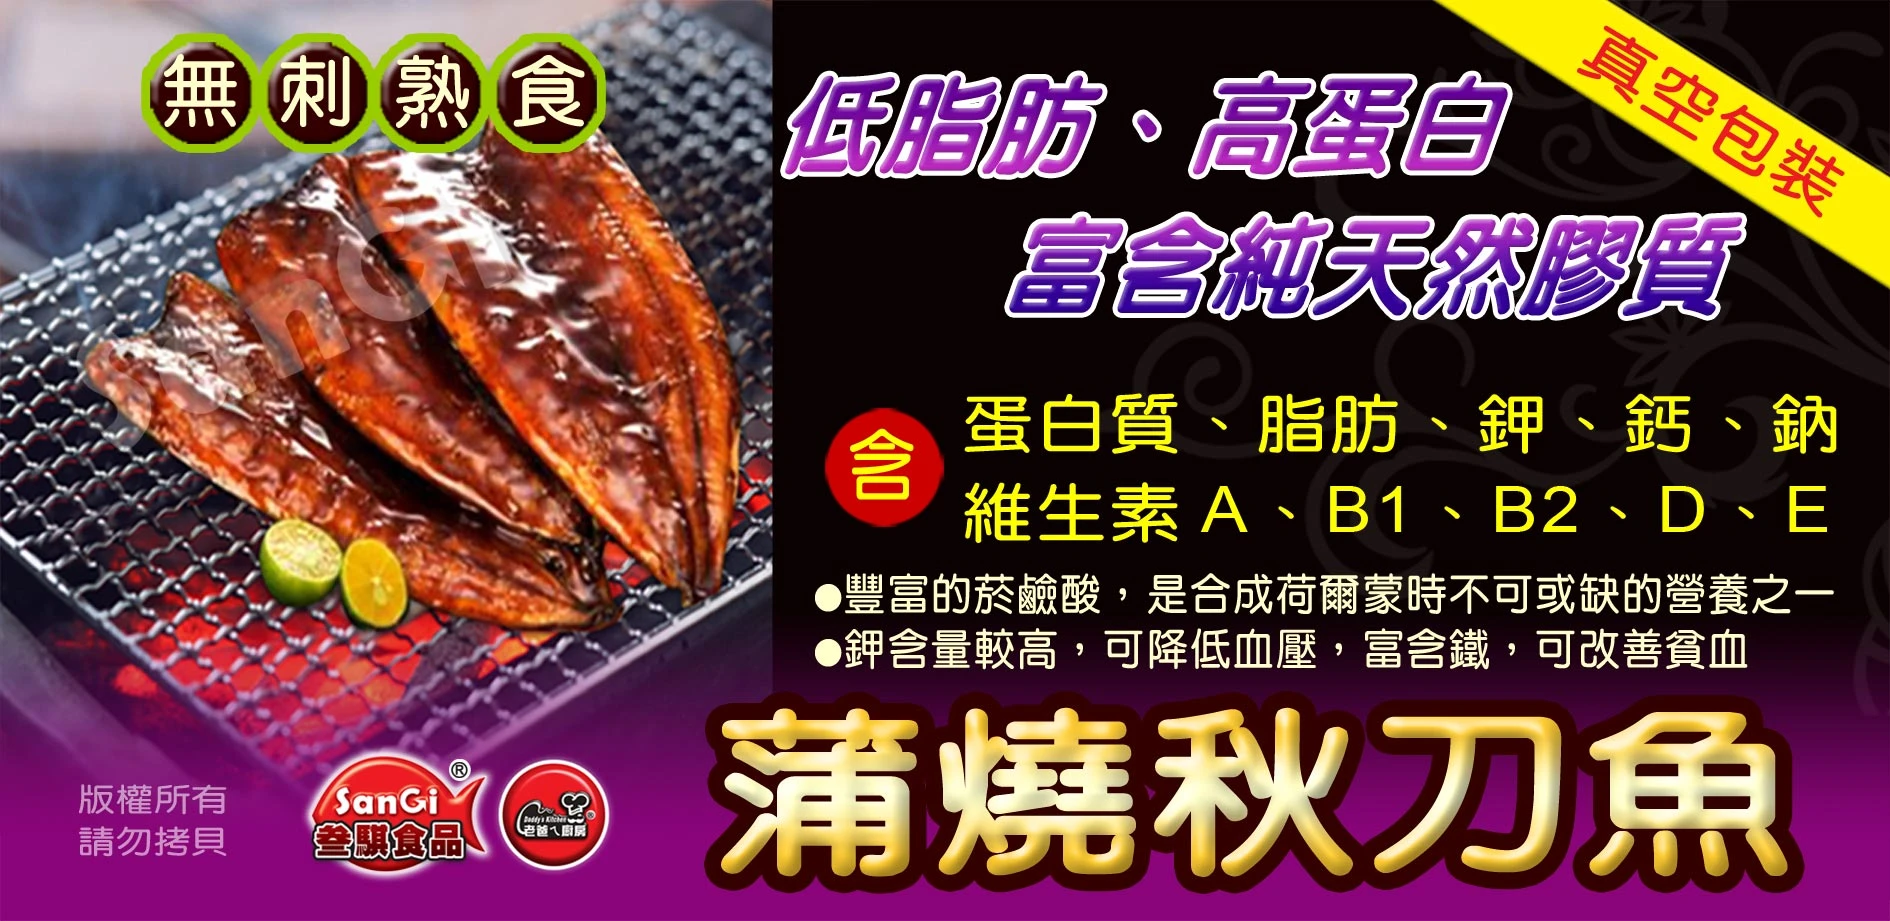 蒲燒秋刀魚7片/1KG(真空包)